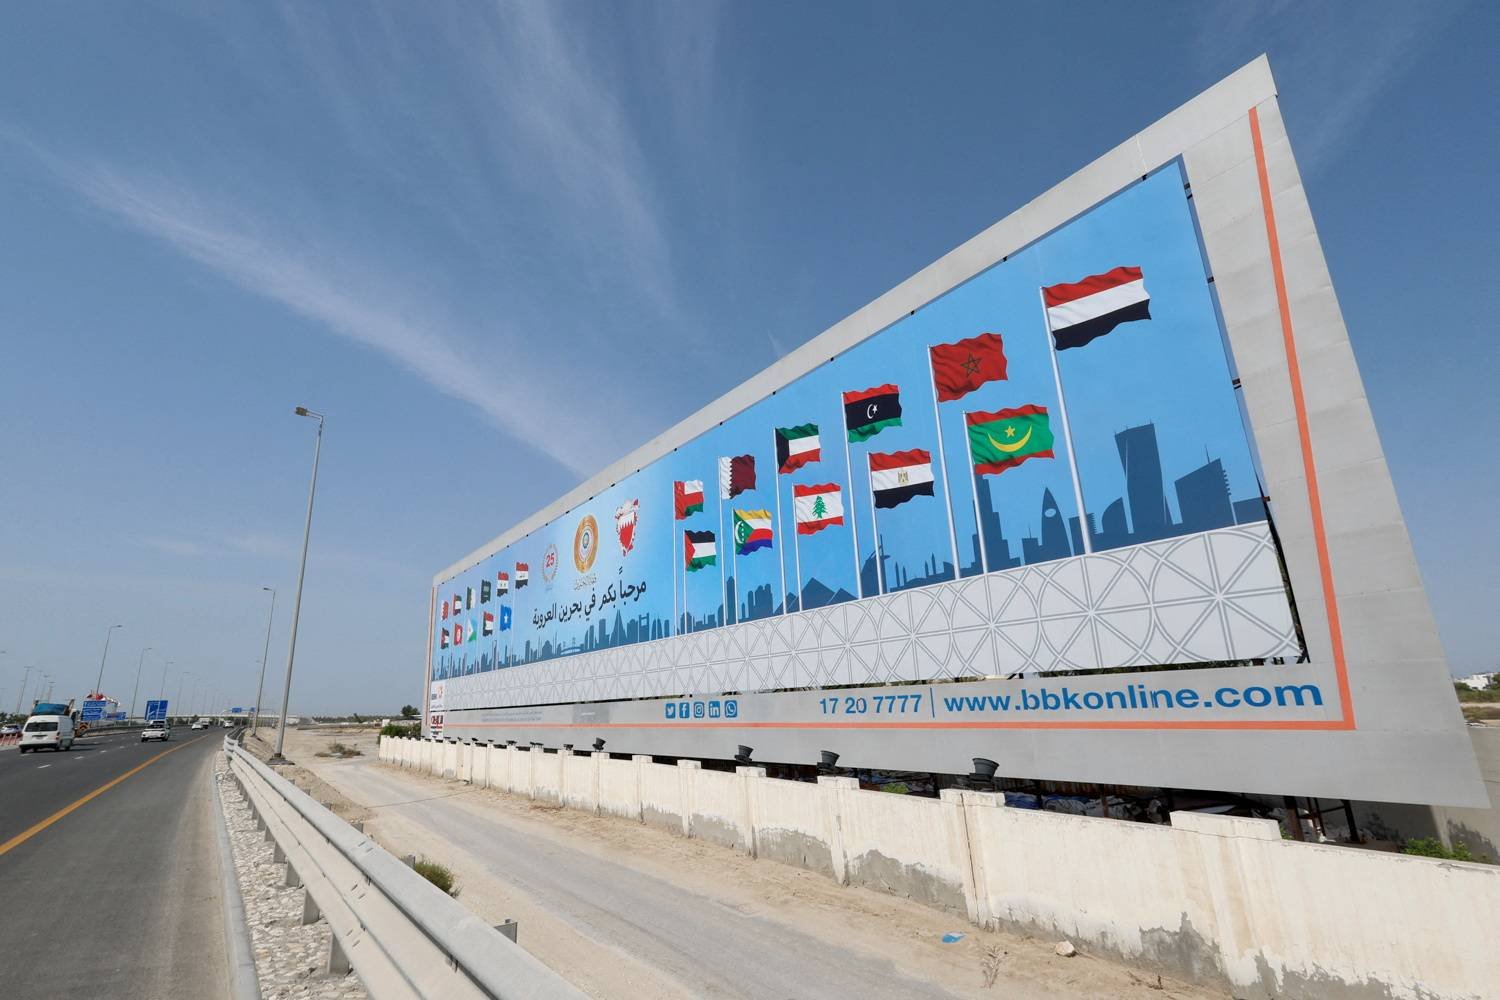 لافتة تضم أعلام الدول المشاركة في القمة العربية بالبحرين (رويترز)